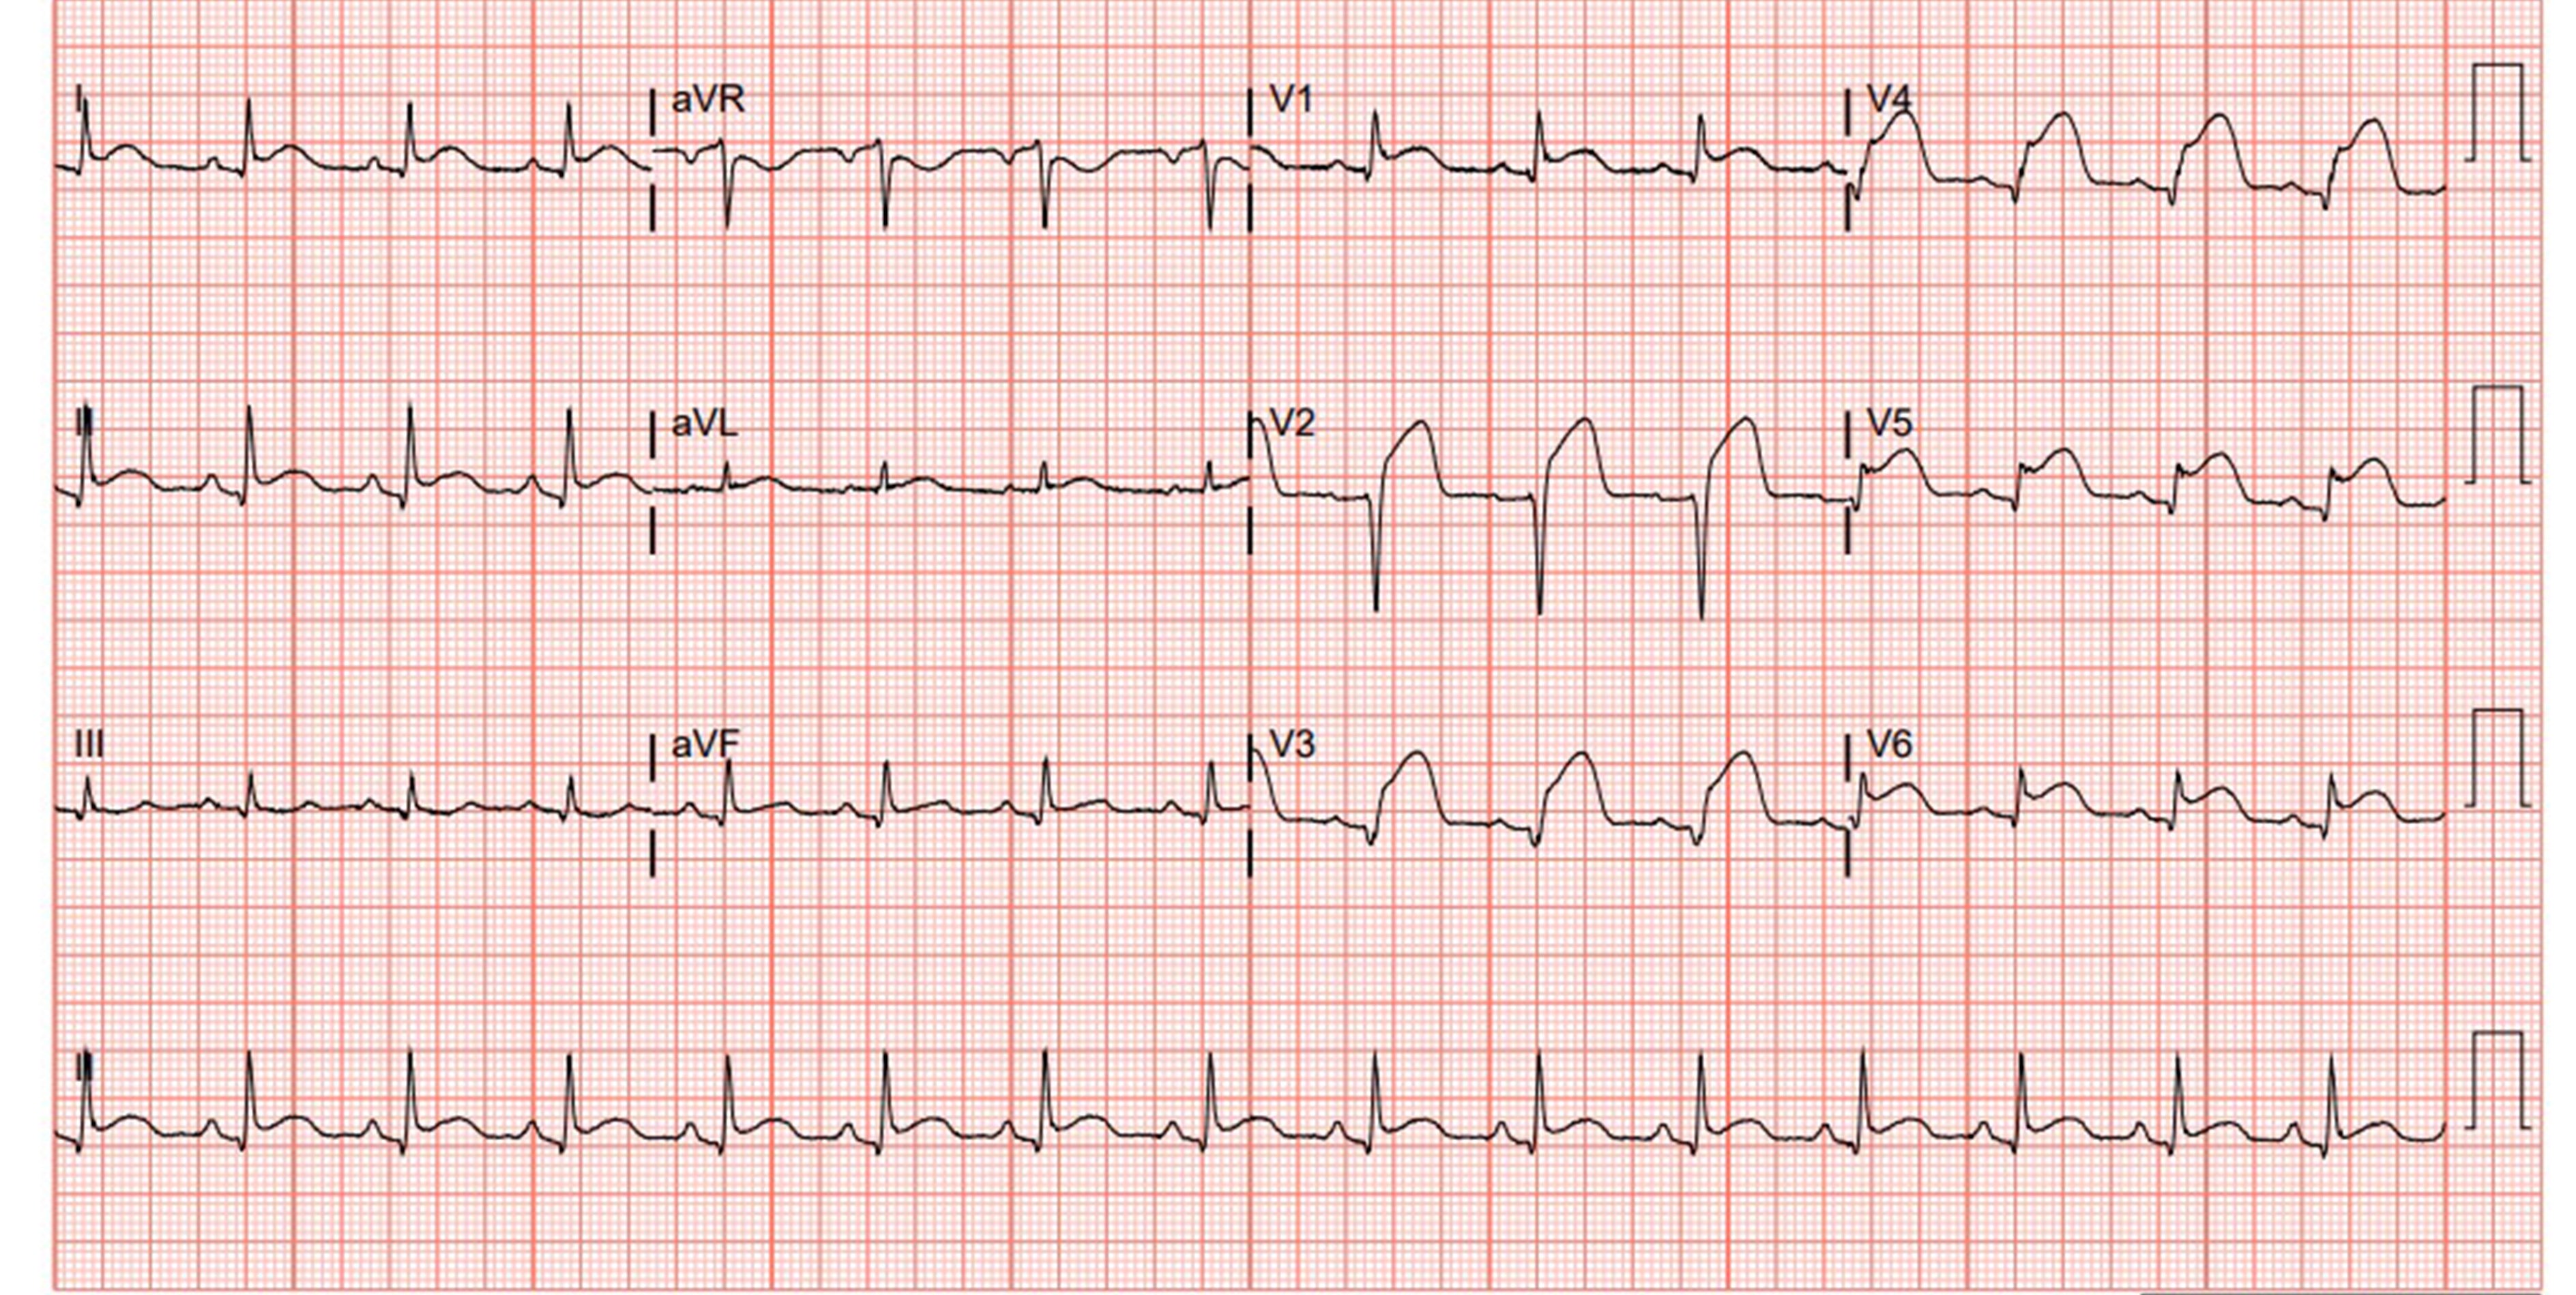 Figure 2 - Repeat EKG